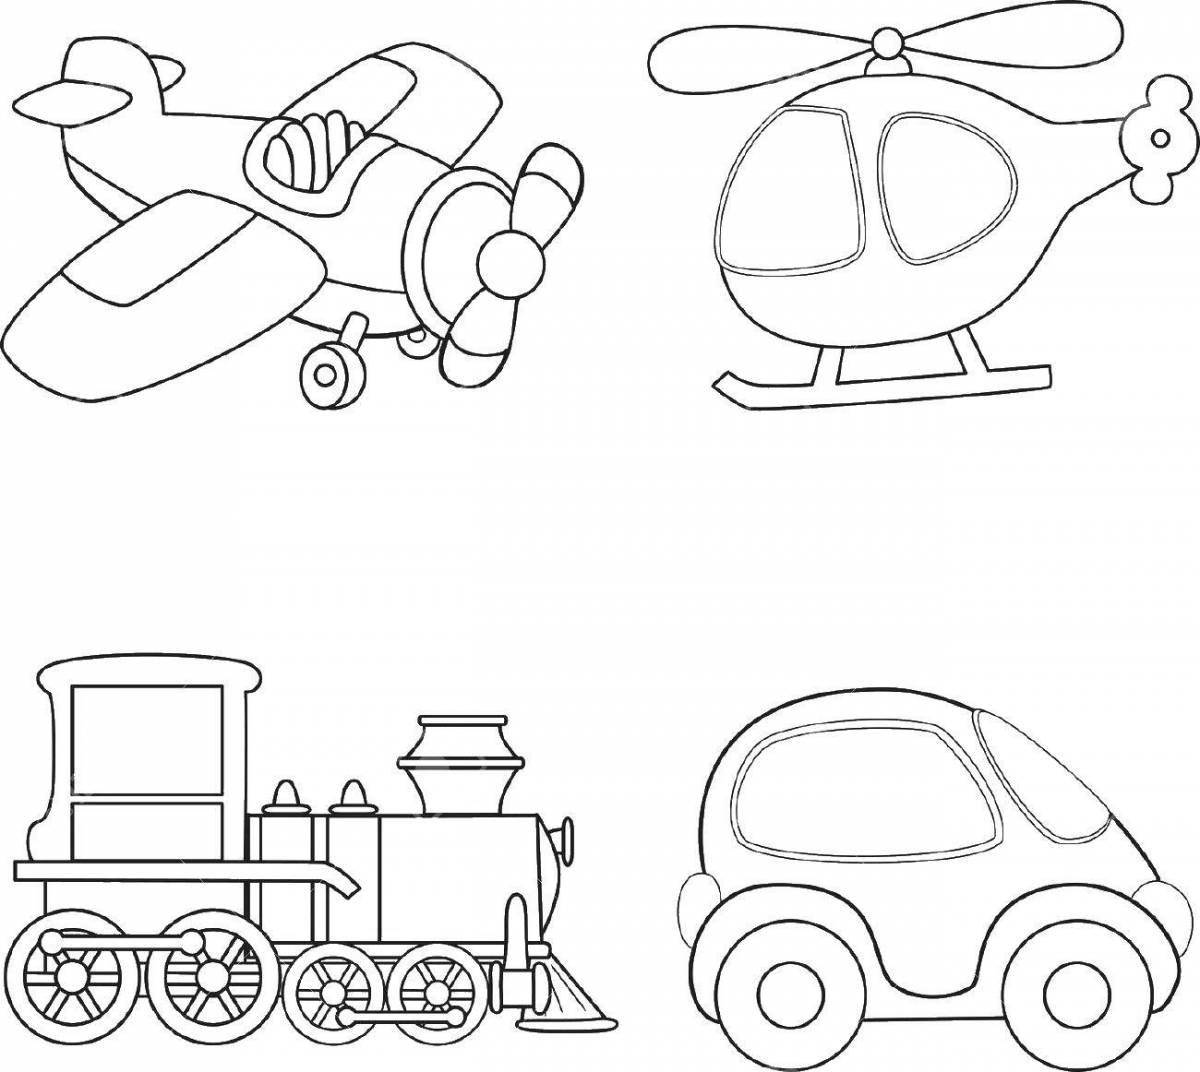 Fun transport coloring book